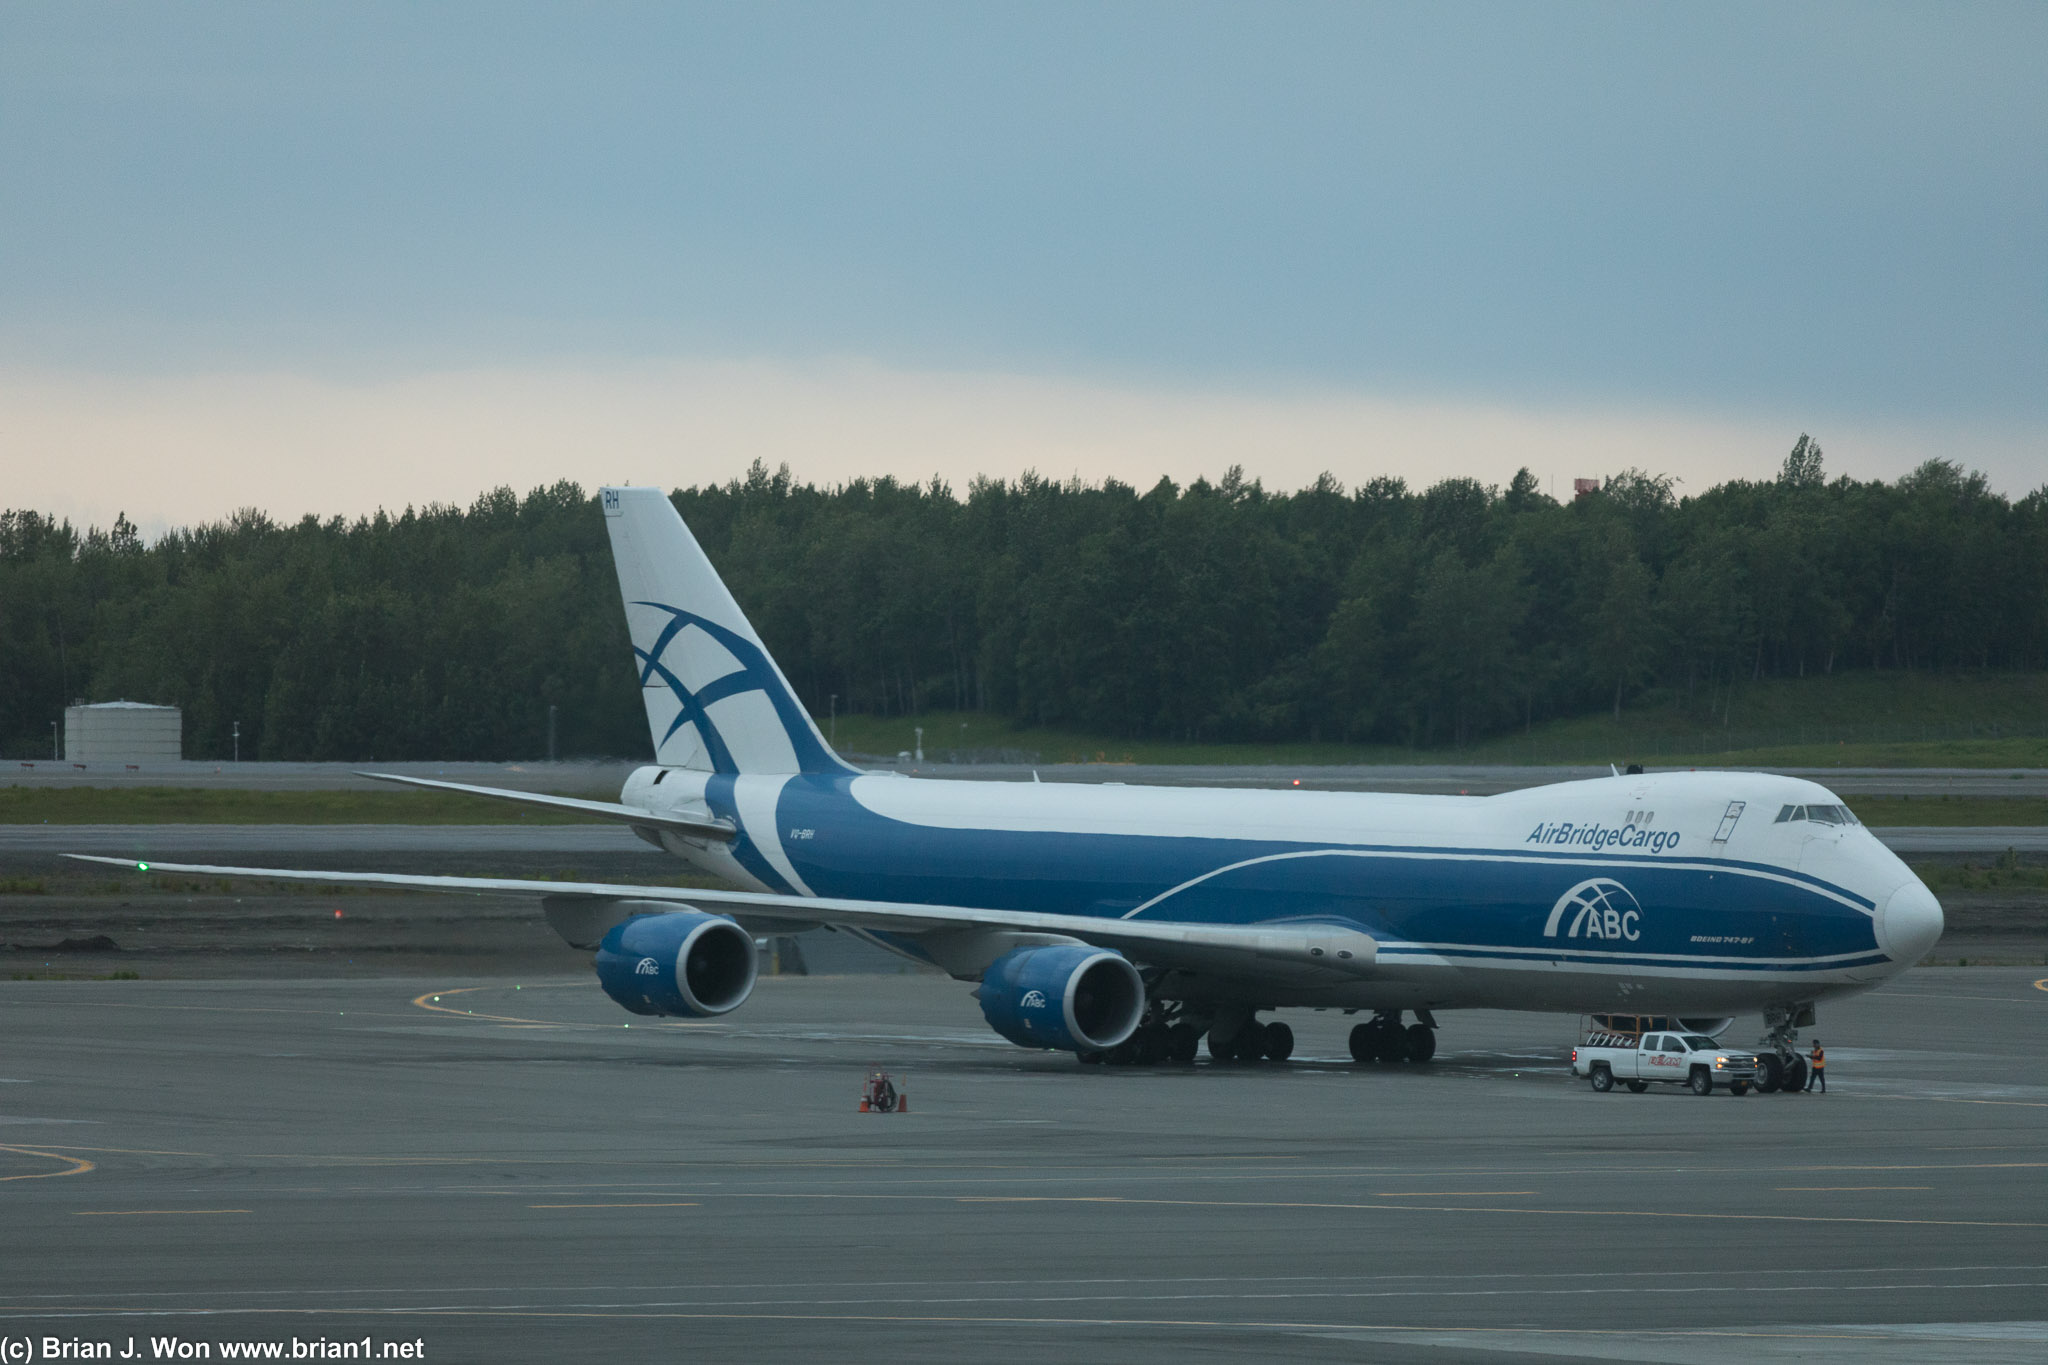 AirBridge Cargo 747-8F.